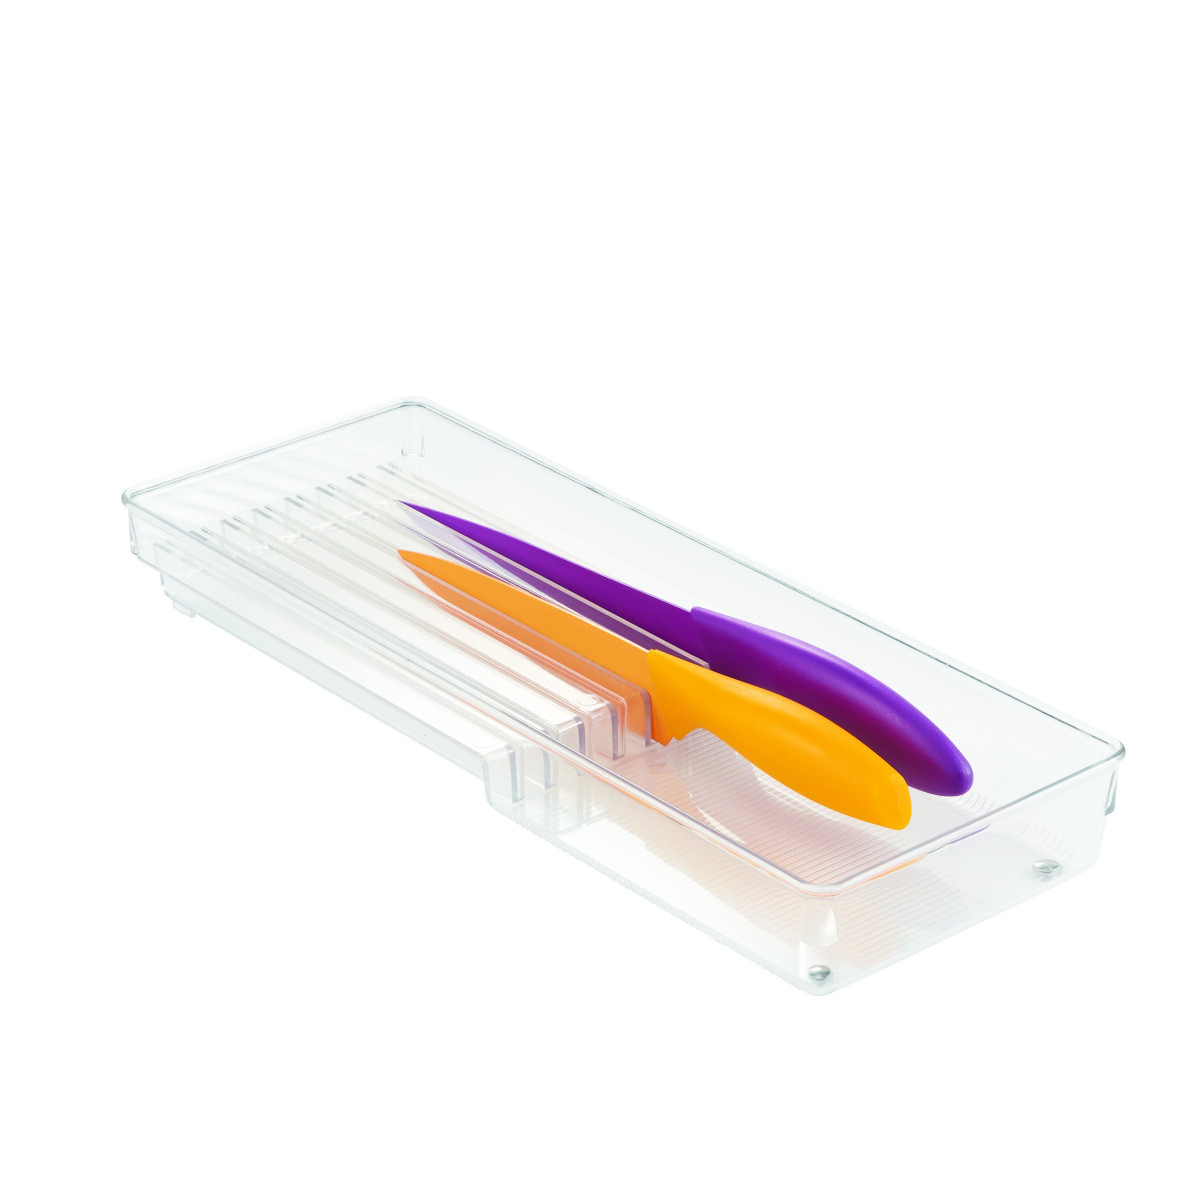 transparent iDesign range couvert pour couteaux rangement tiroir pour les couteaux petit casier rangement plastique pour 8 couteaux 